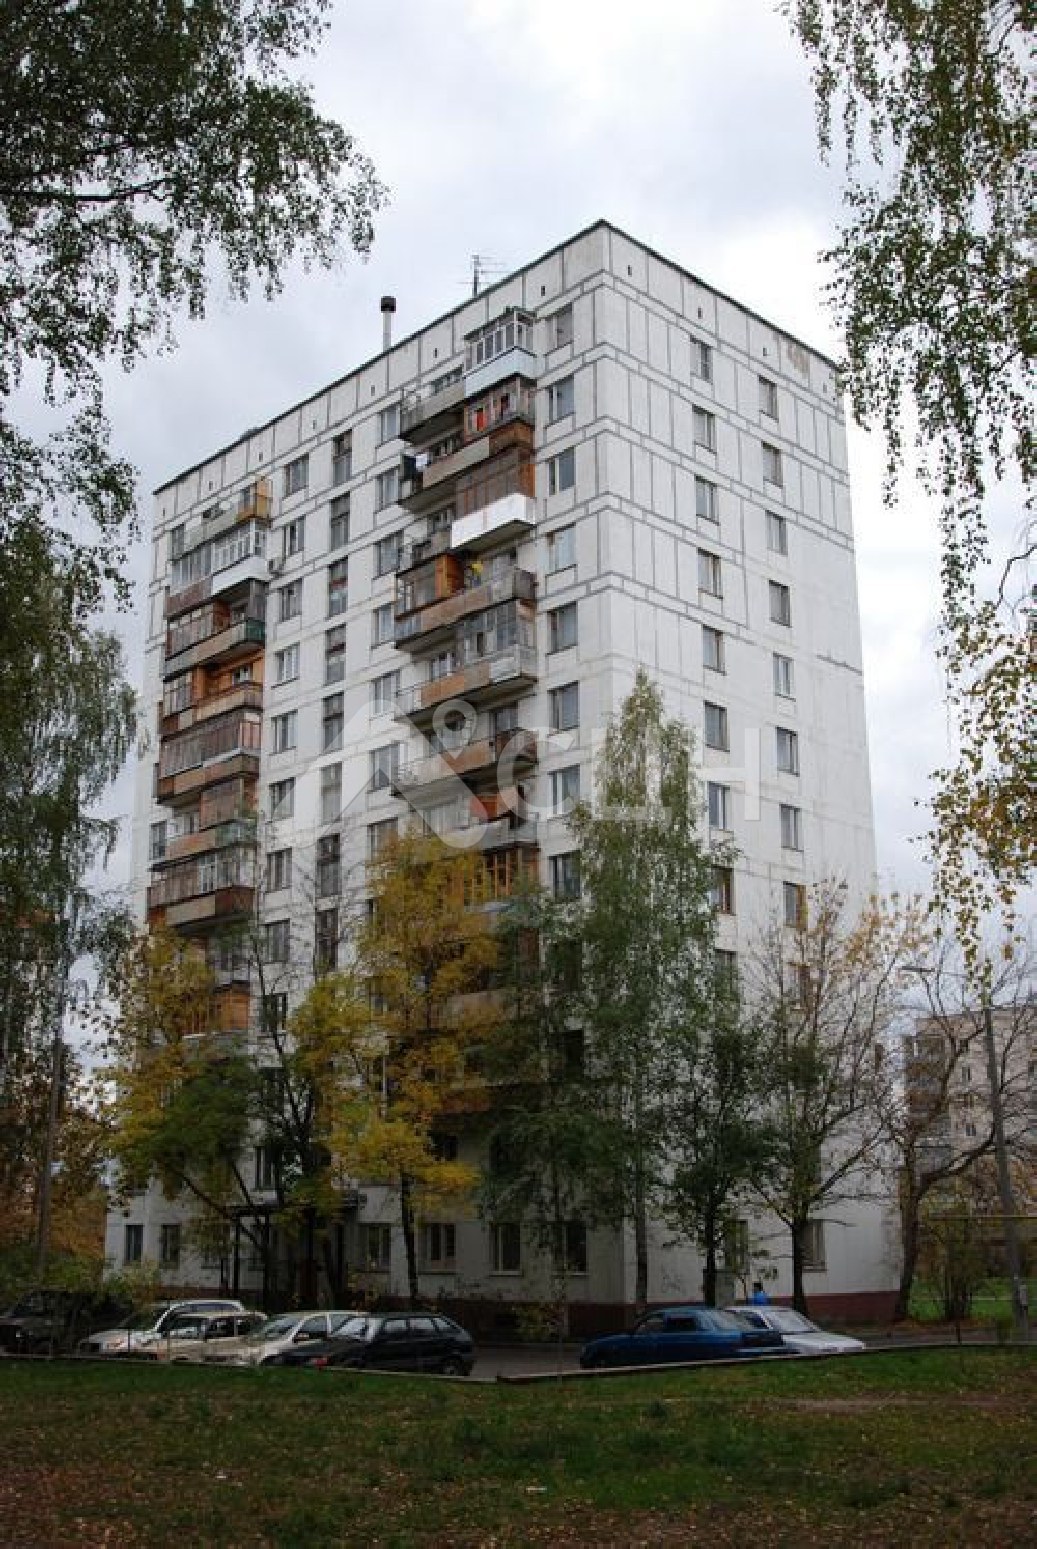 обявление саров
: Г. Саров, улица Бессарабенко, 7, 1-комн квартира, этаж 12 из 12, аренда.